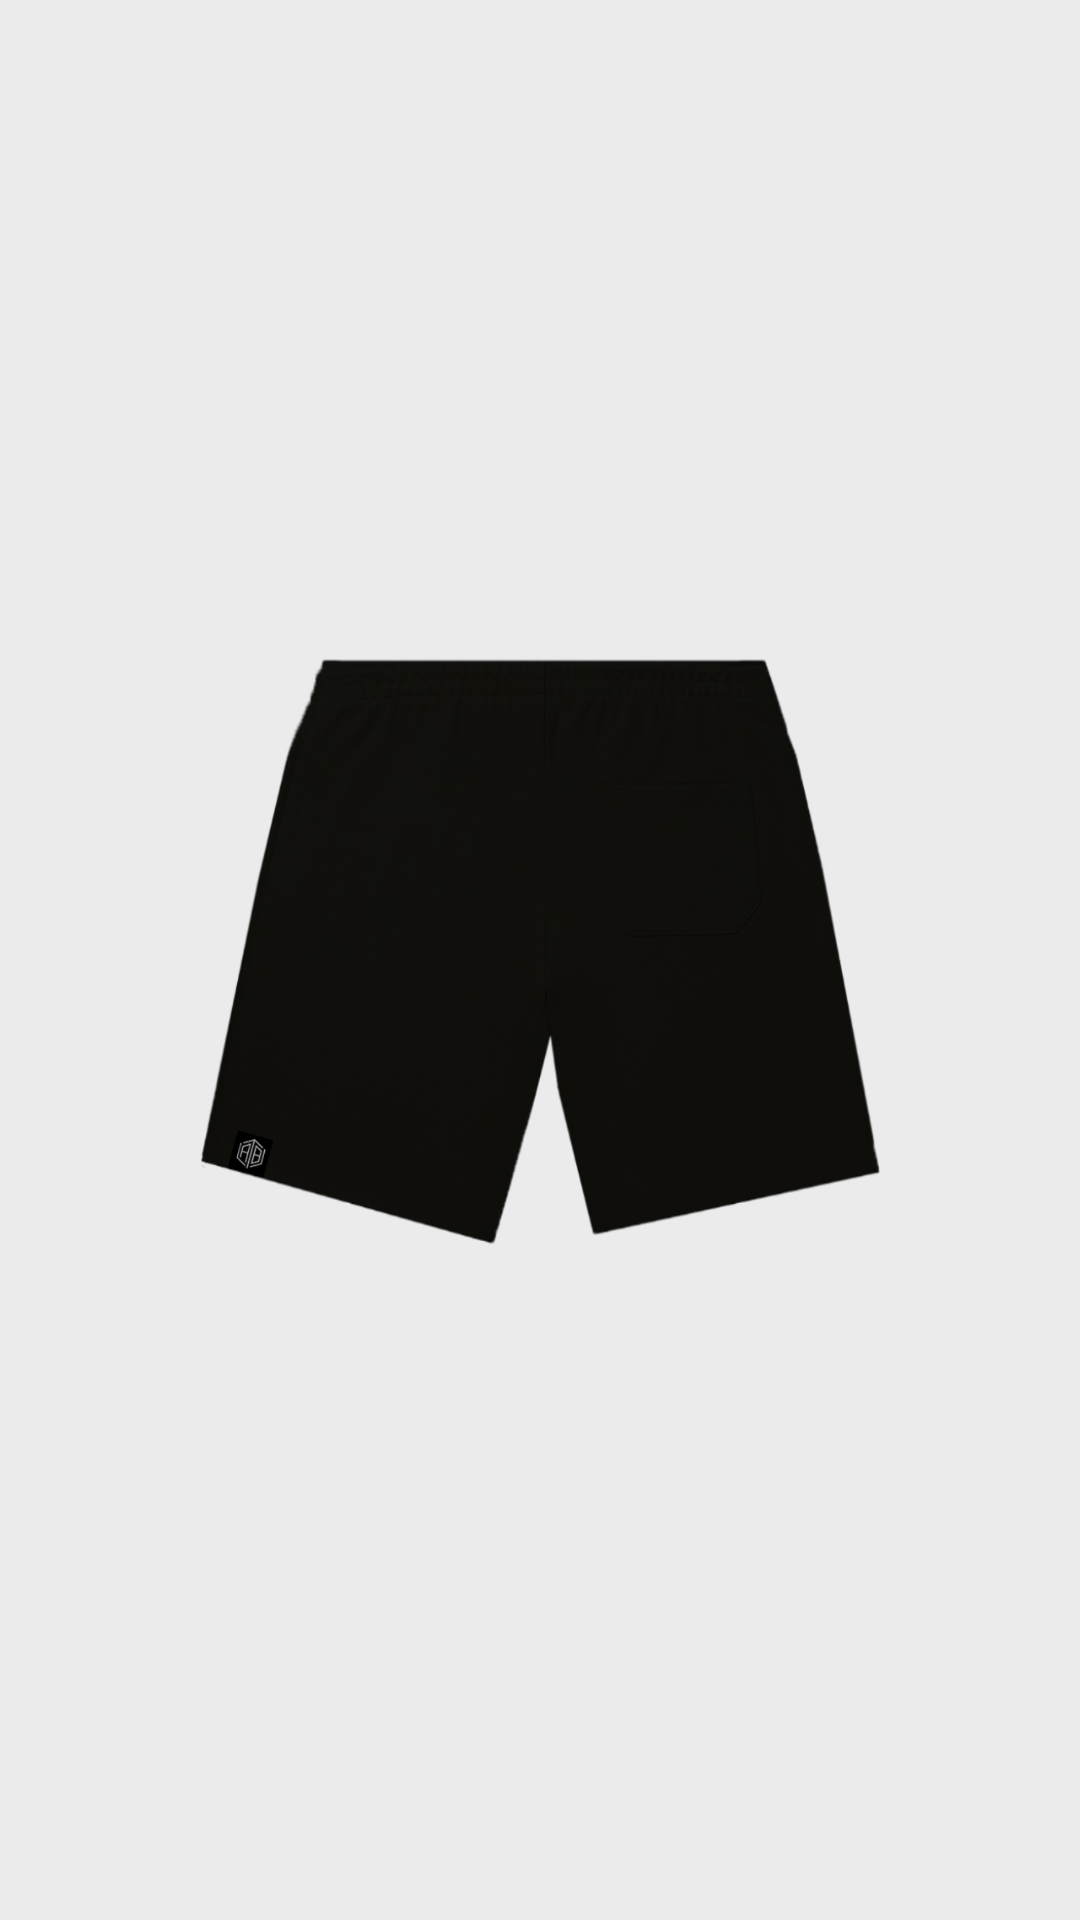 The Artic Shorts Black - Attractedtoblack